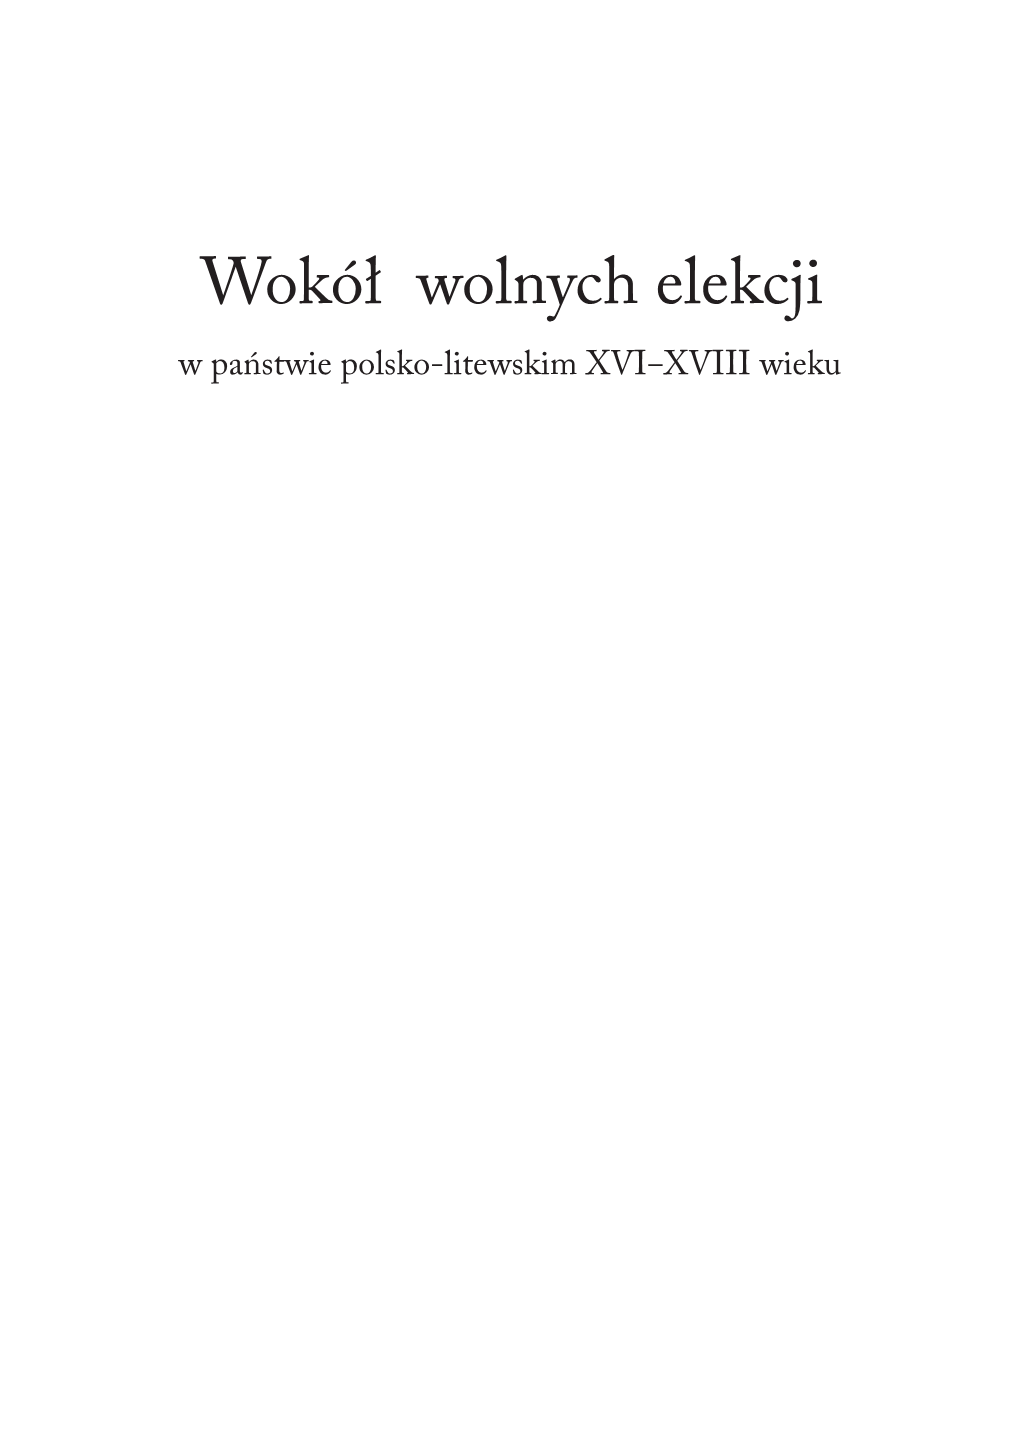 Wokół Wolnych Elekcji W Państwie Polsko-Litewskim XVI‒XVIII Wieku NR 3526 Wokół Wolnych Elekcji W Państwie Polsko-Litewskim XVI‒XVIII Wieku